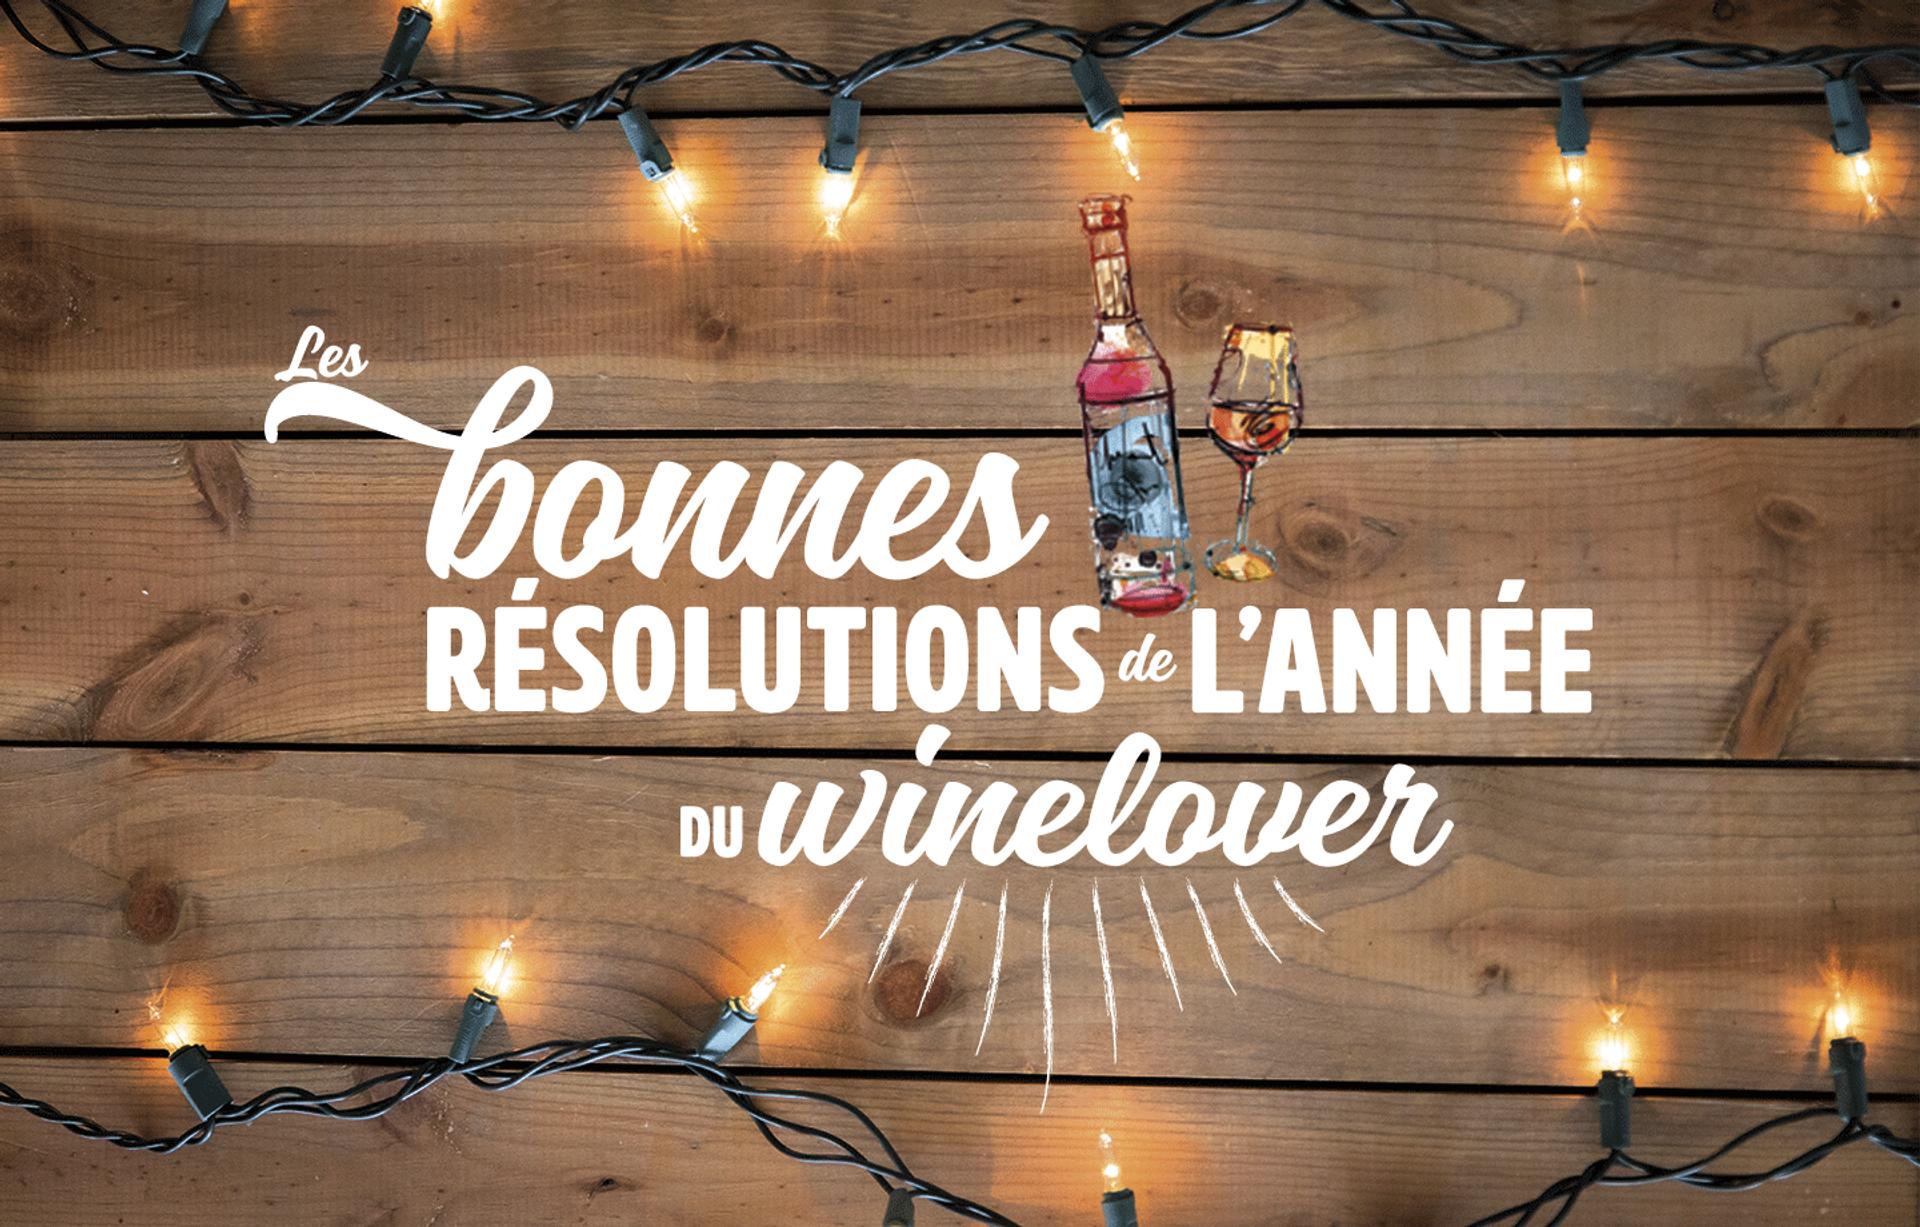 Les douze bonnes résolutions de l'année du winelover